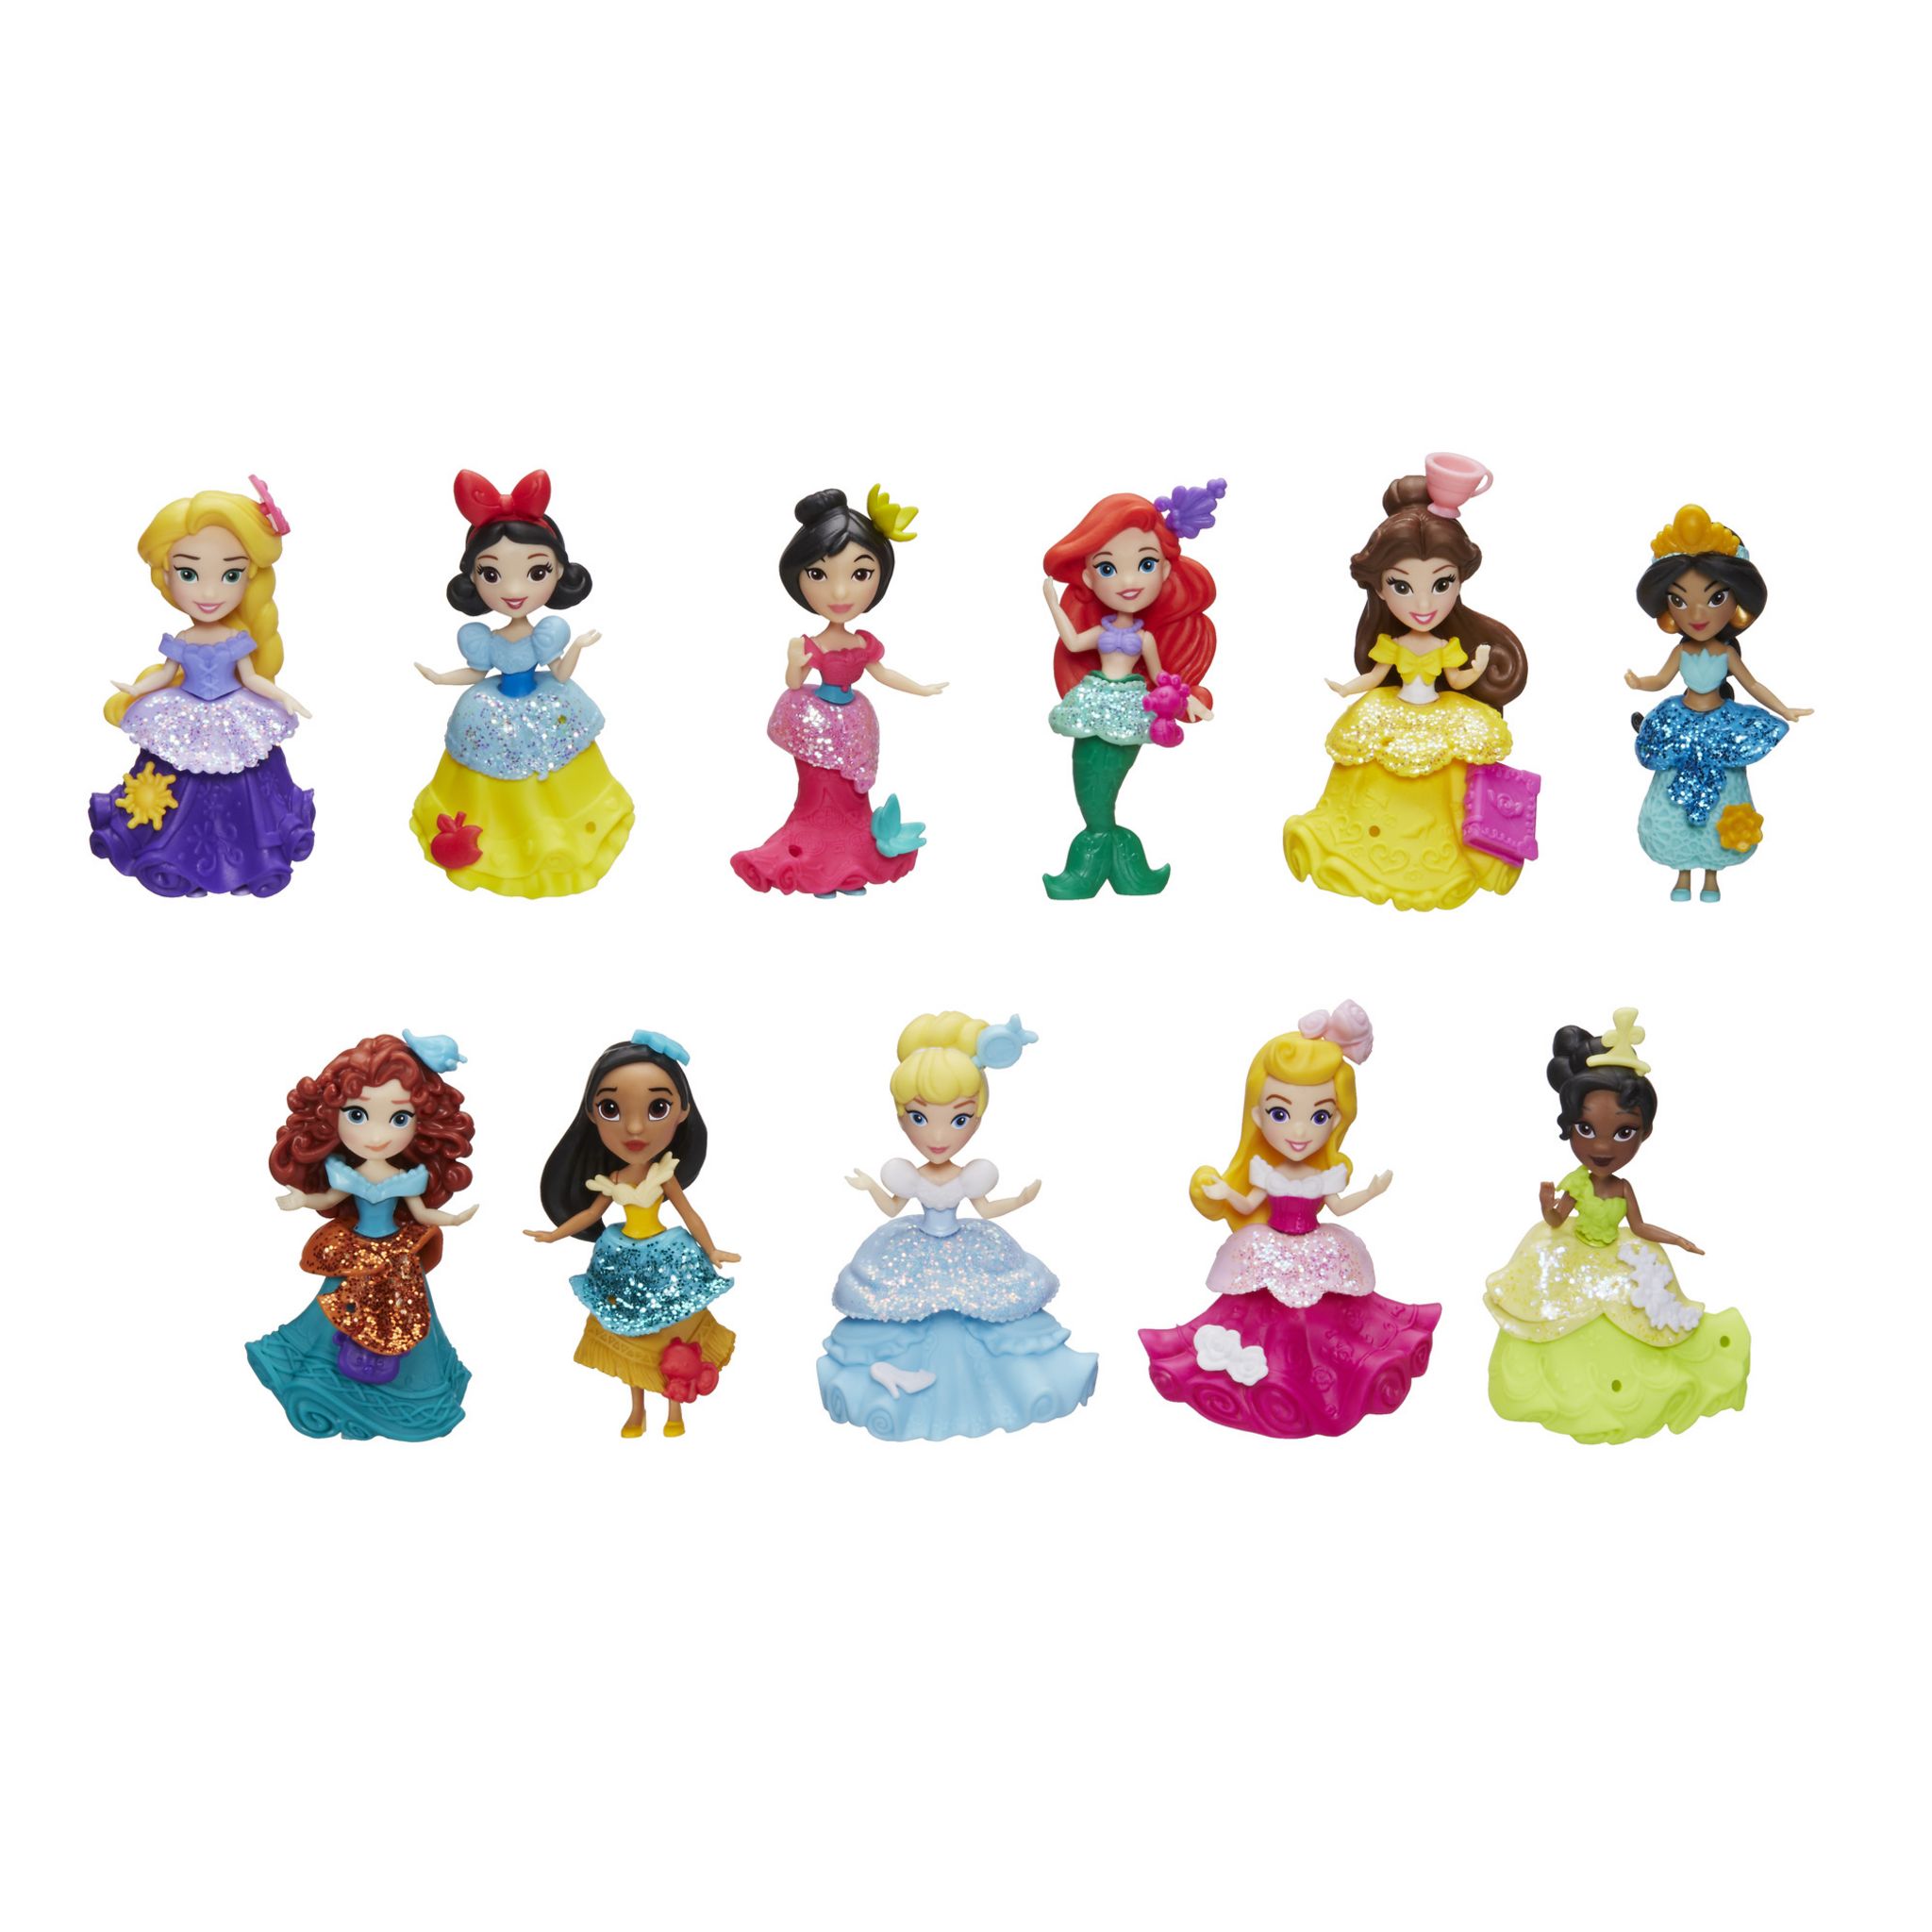 HASBRO Coffret de 11 mini-poupées collection royaume - Disney Princesses  pas cher 